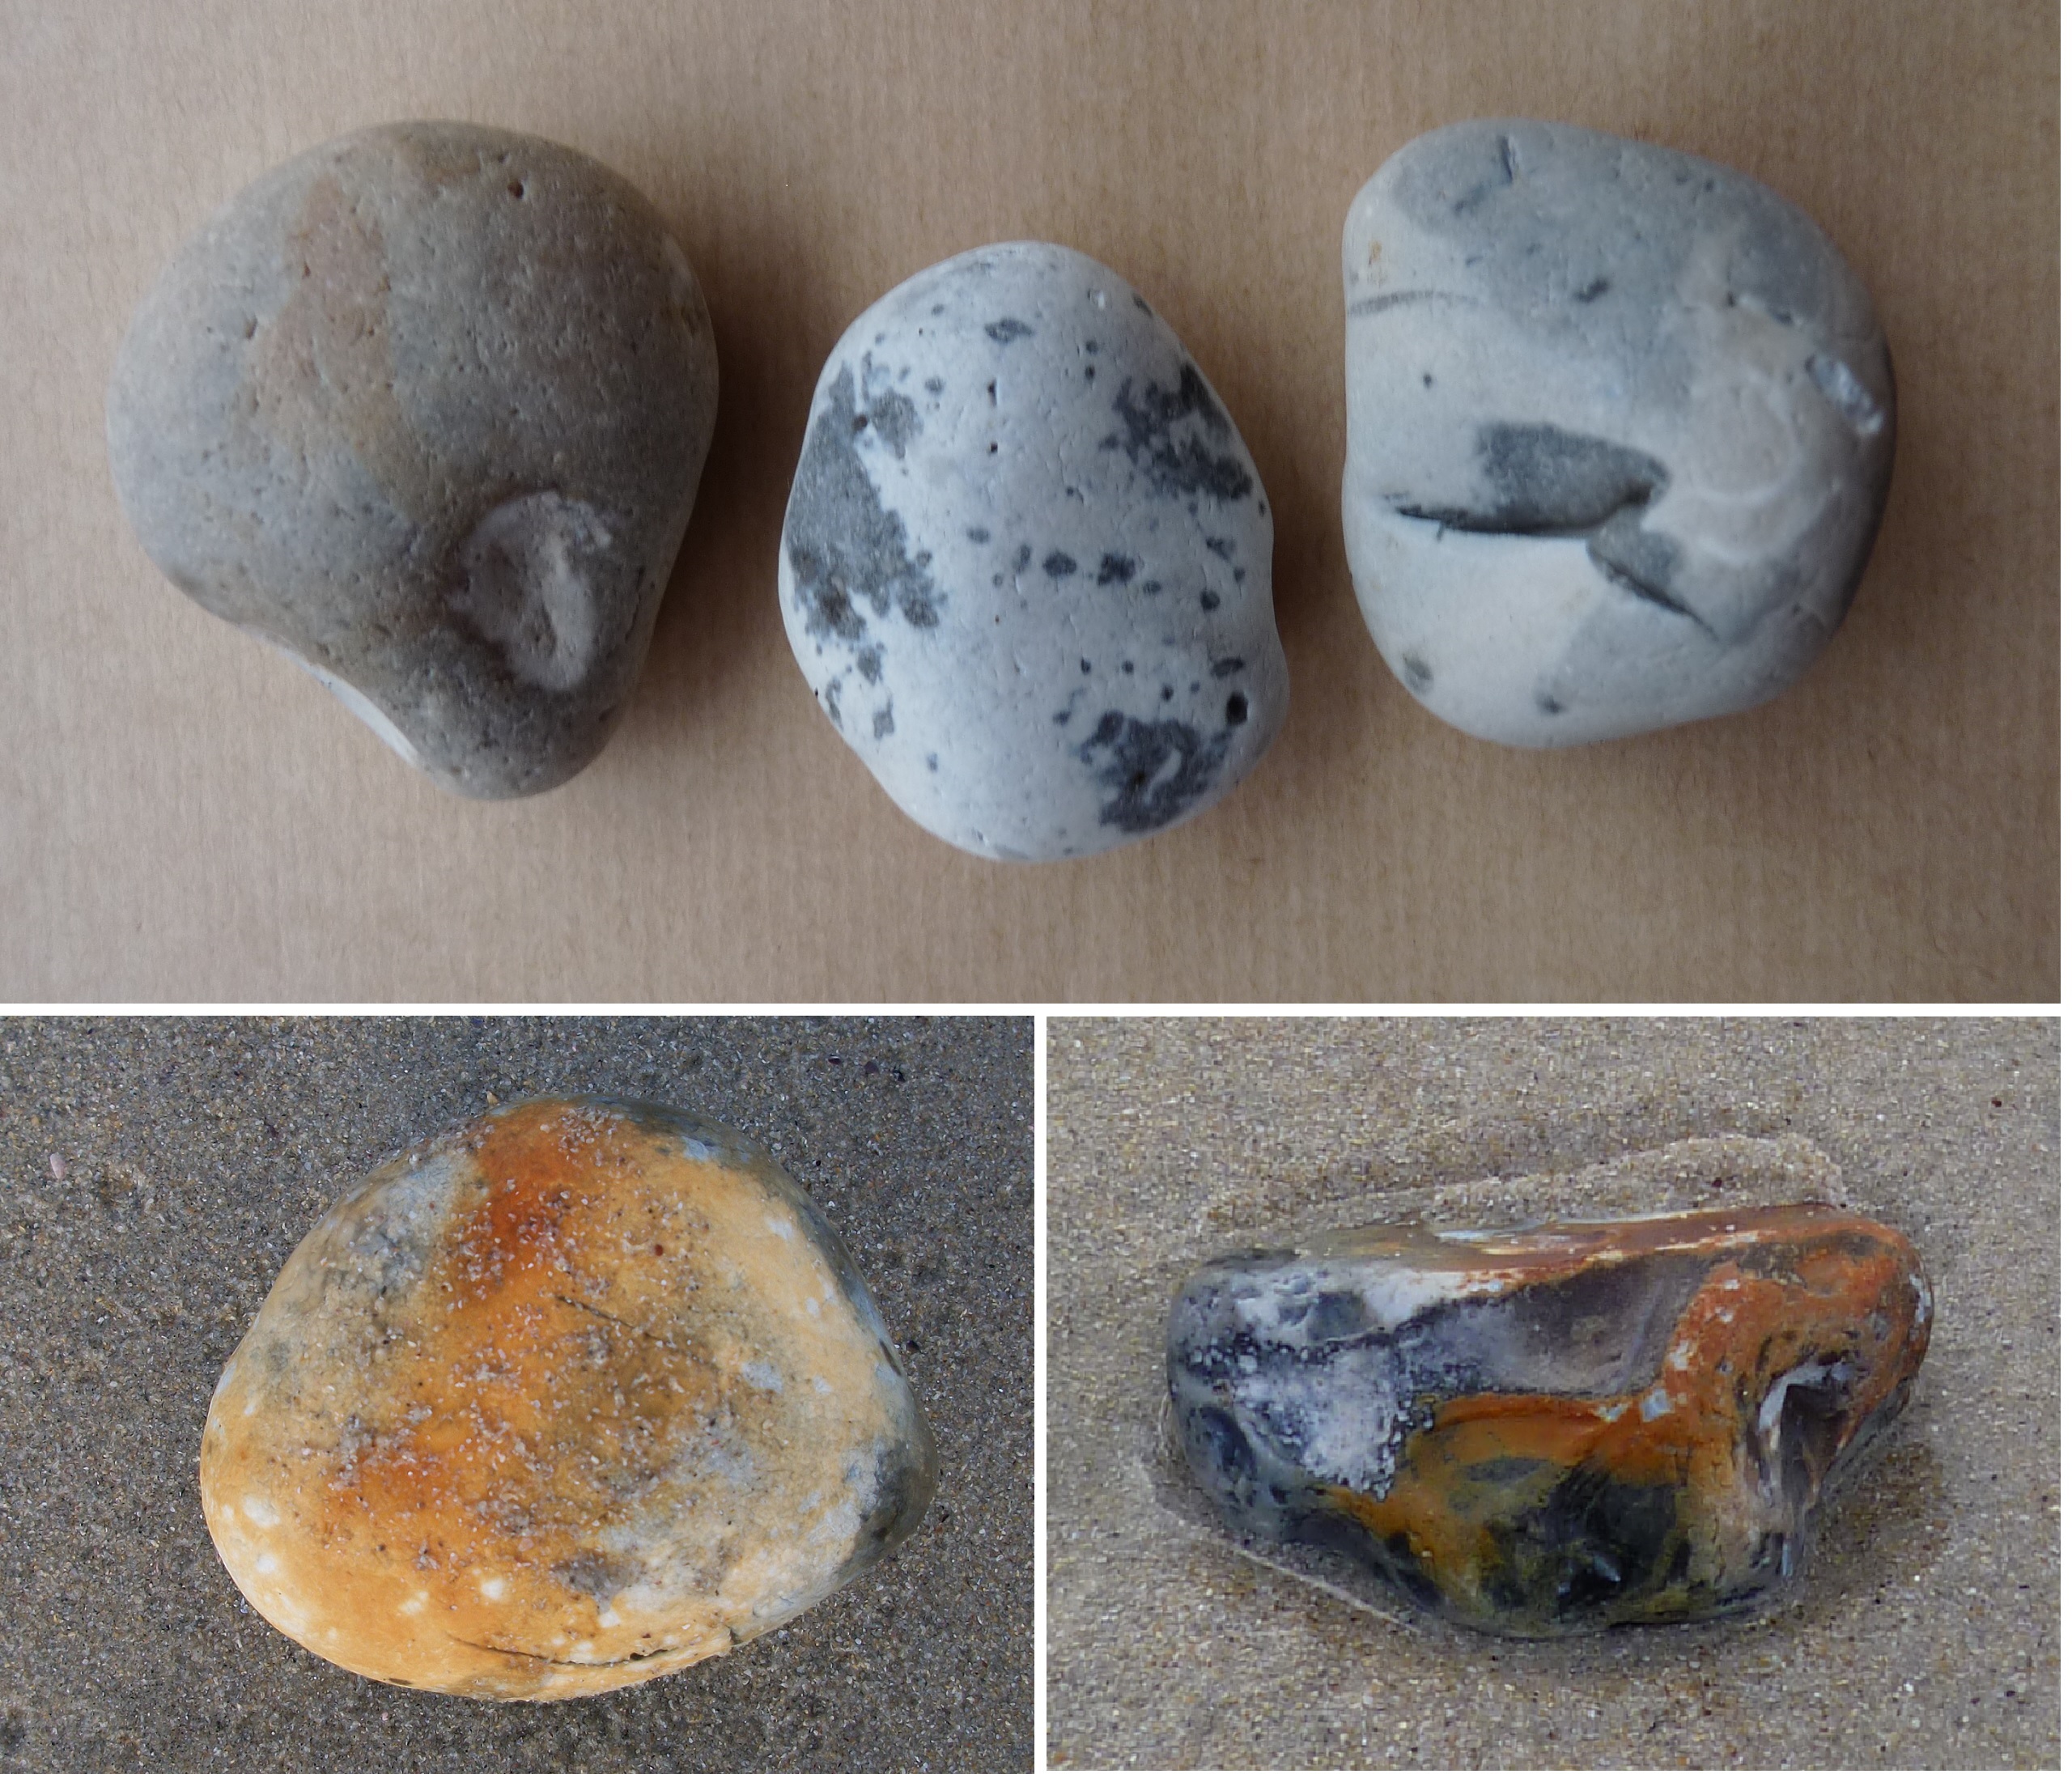 Foto 15: Piedras de sílex encontradas en el lugar donde aparecieron los restos de una embarcación (Playa de Santa Comba)